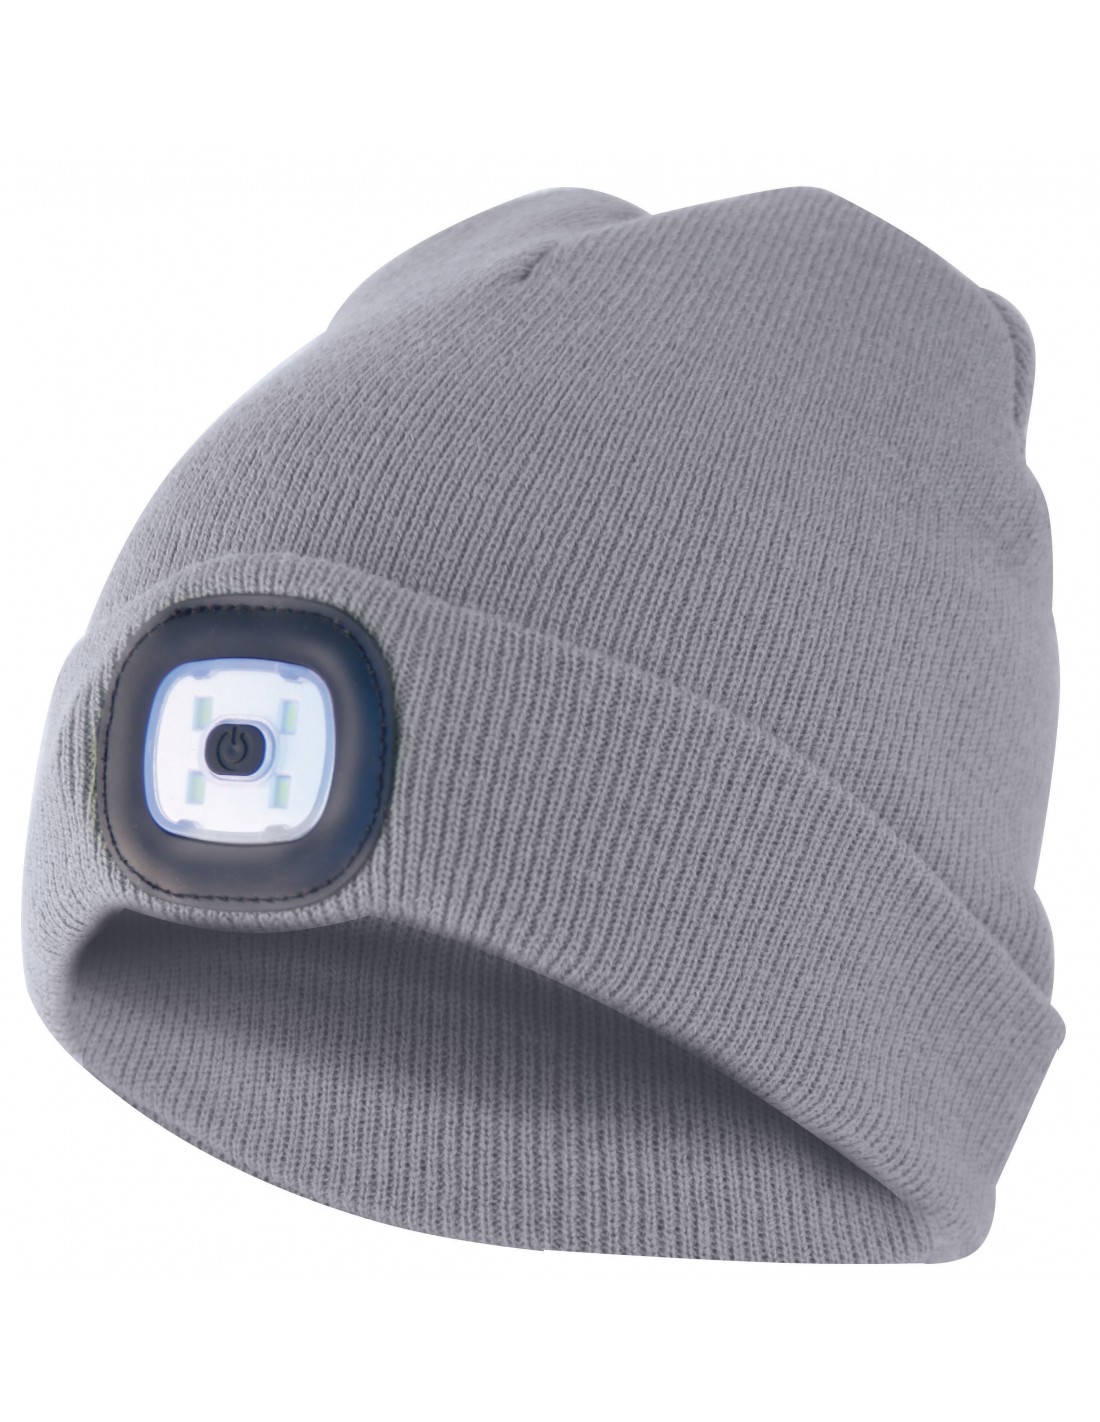 Mütze mit LED-Frontleuchte, Strickmütze mit LED-Licht ideal zum Joggen, Campen, Arbeiten, wiederaufladbar per USB und waschbar, hellgrau